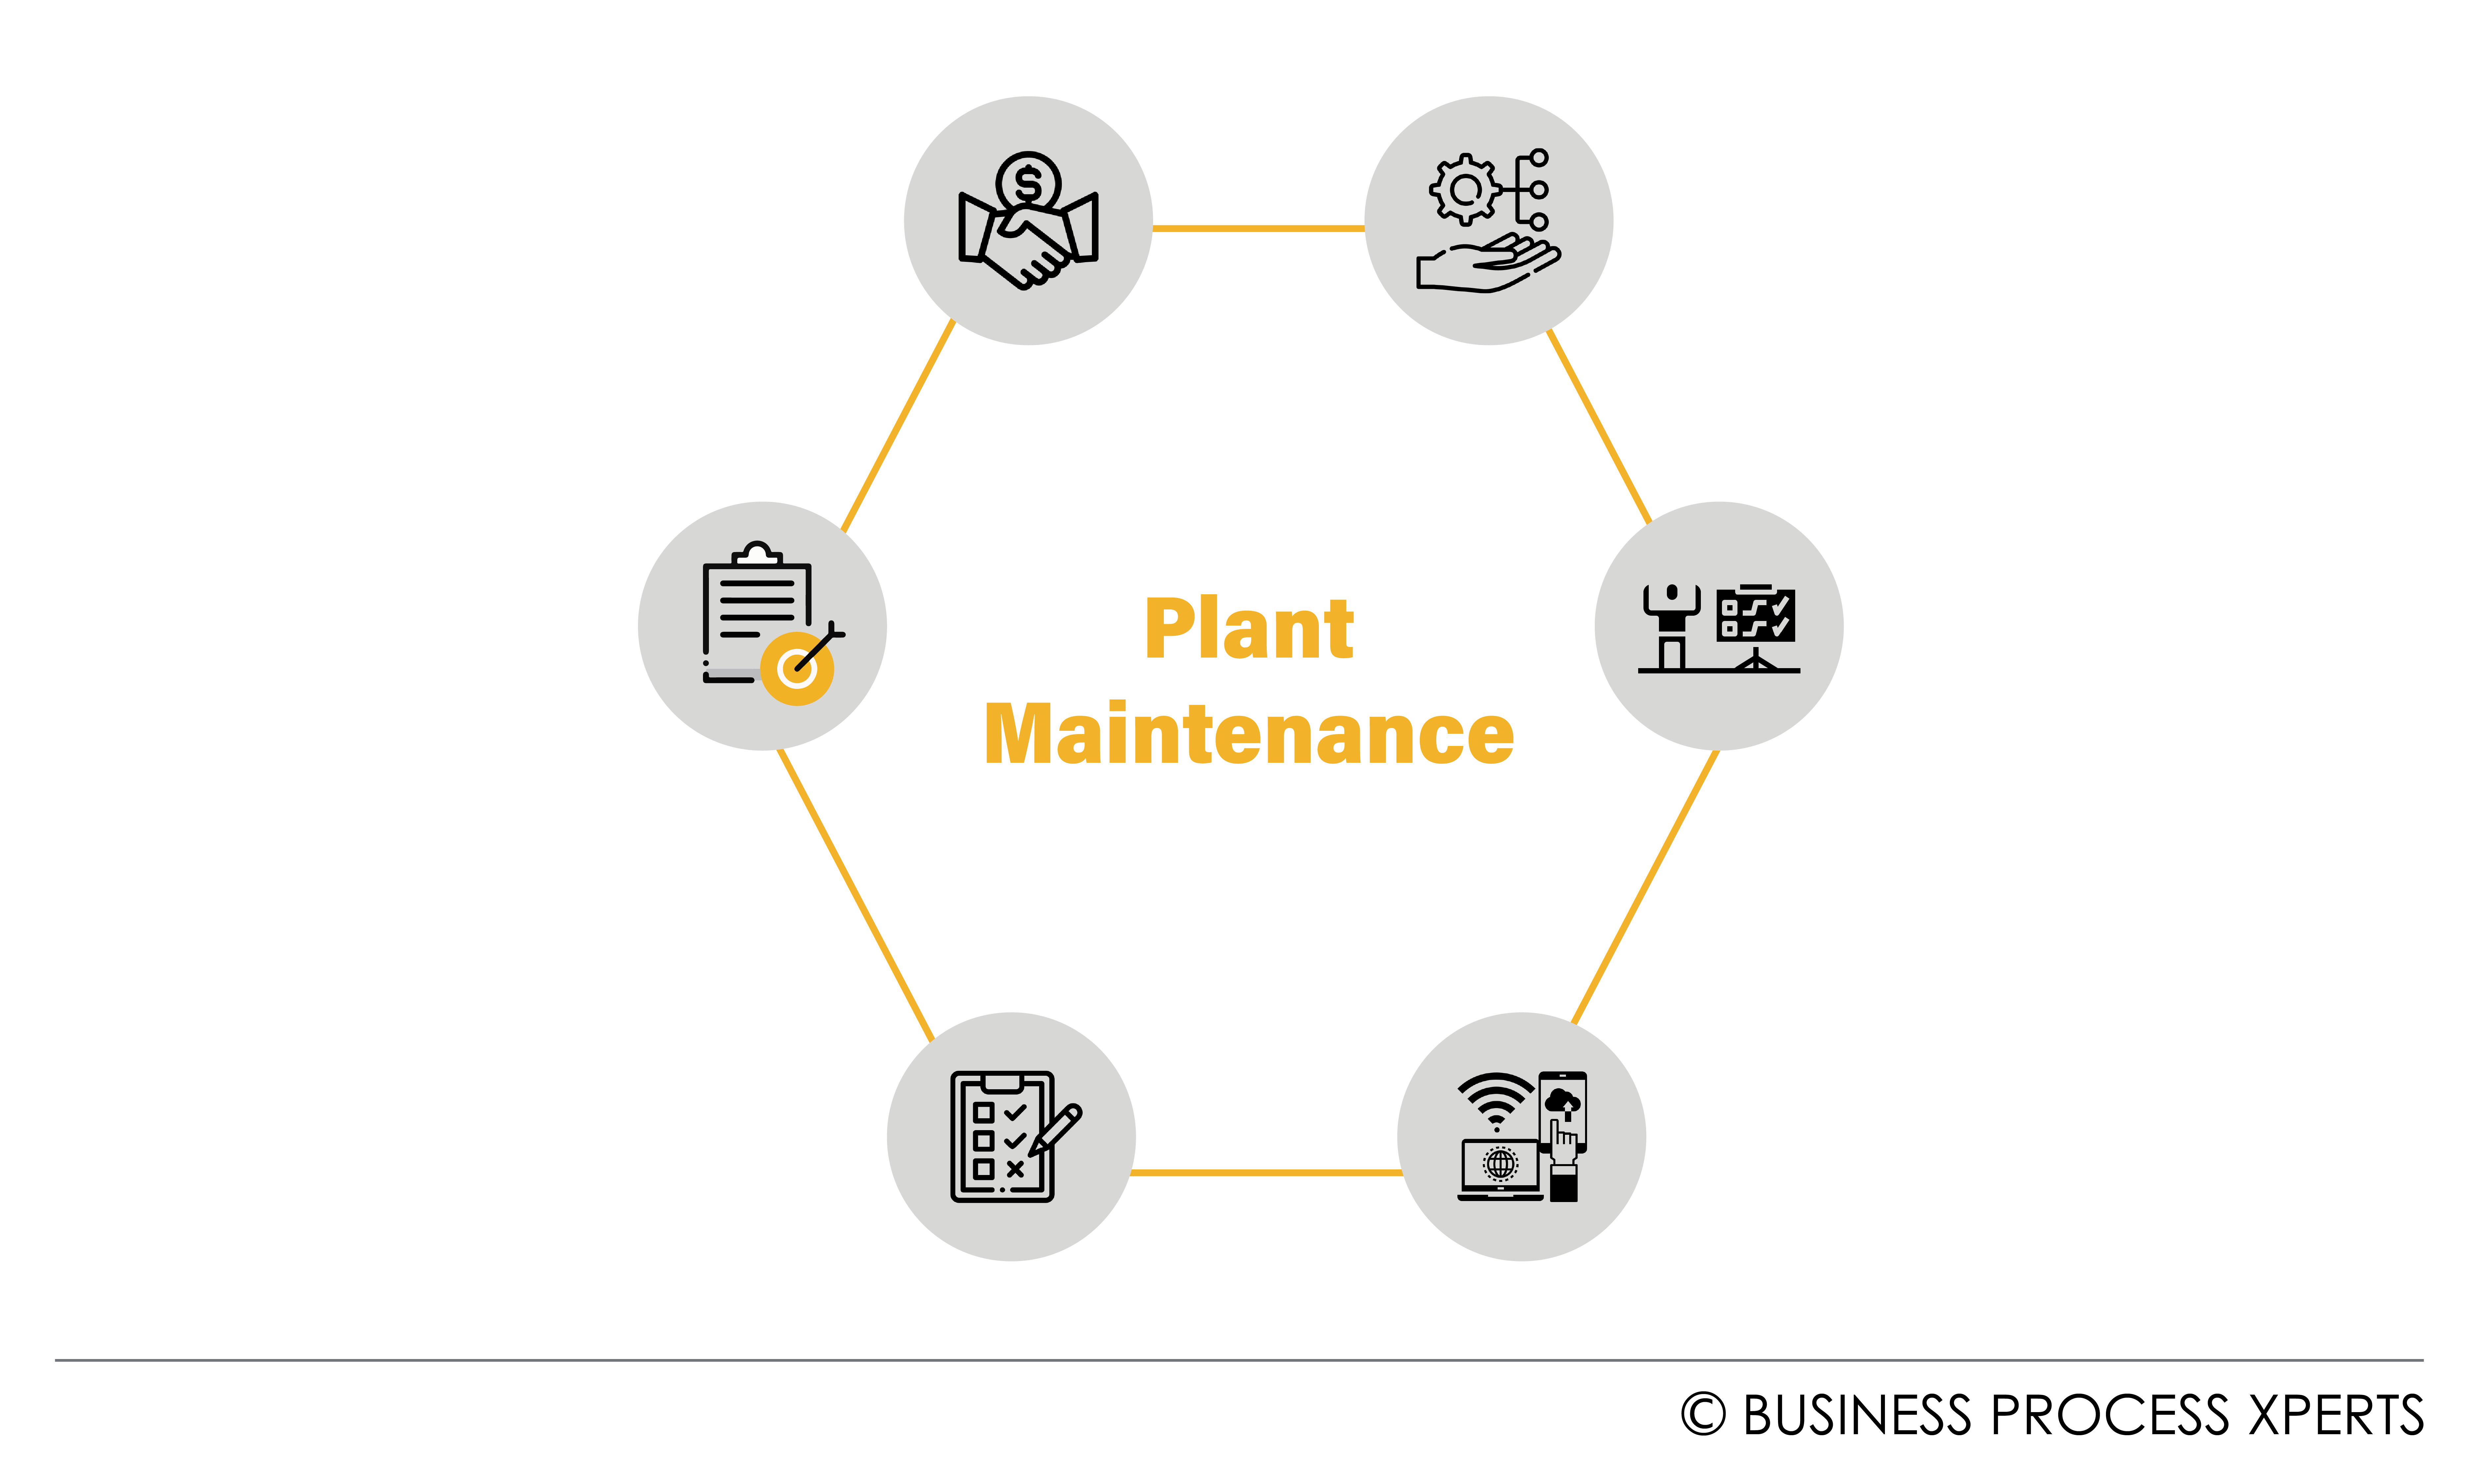 Plant Maintenance (PM)